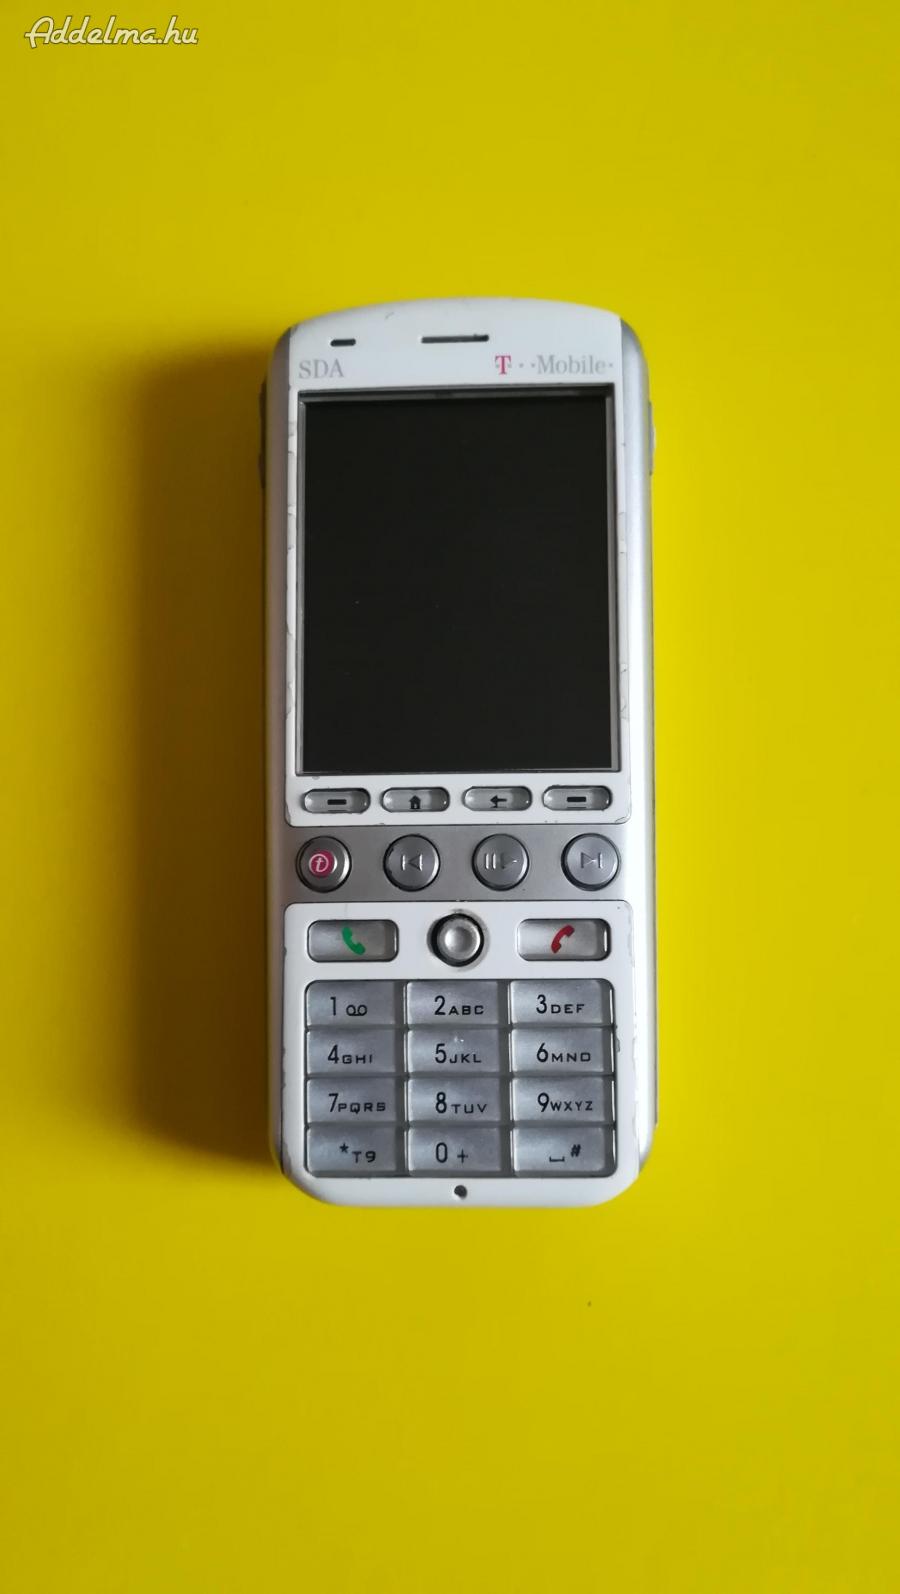 Sda Music xt-06 mobil, nem reagál semmire.